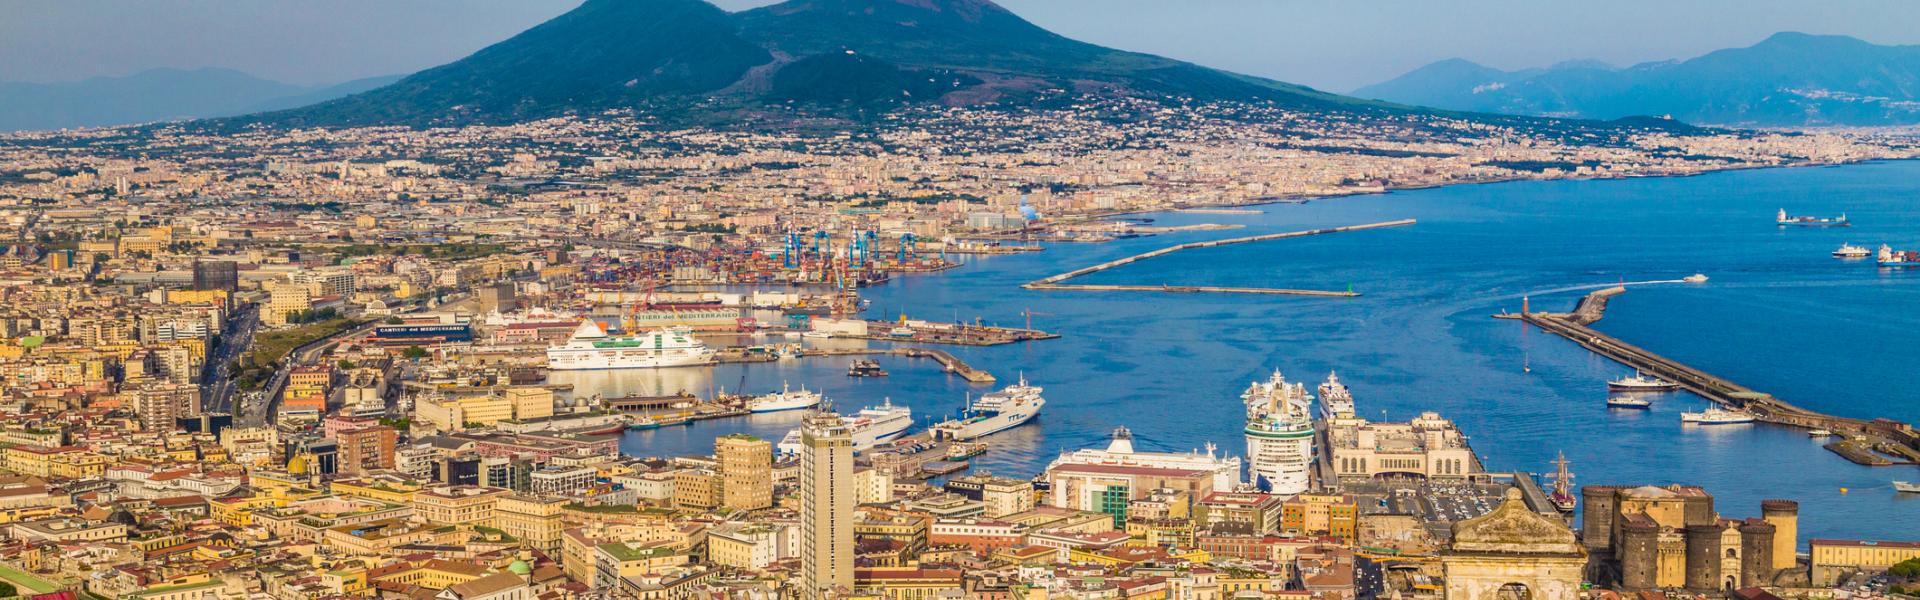 Case vacanze e appartamenti a Napoli in affitto - CaseVacanza.it